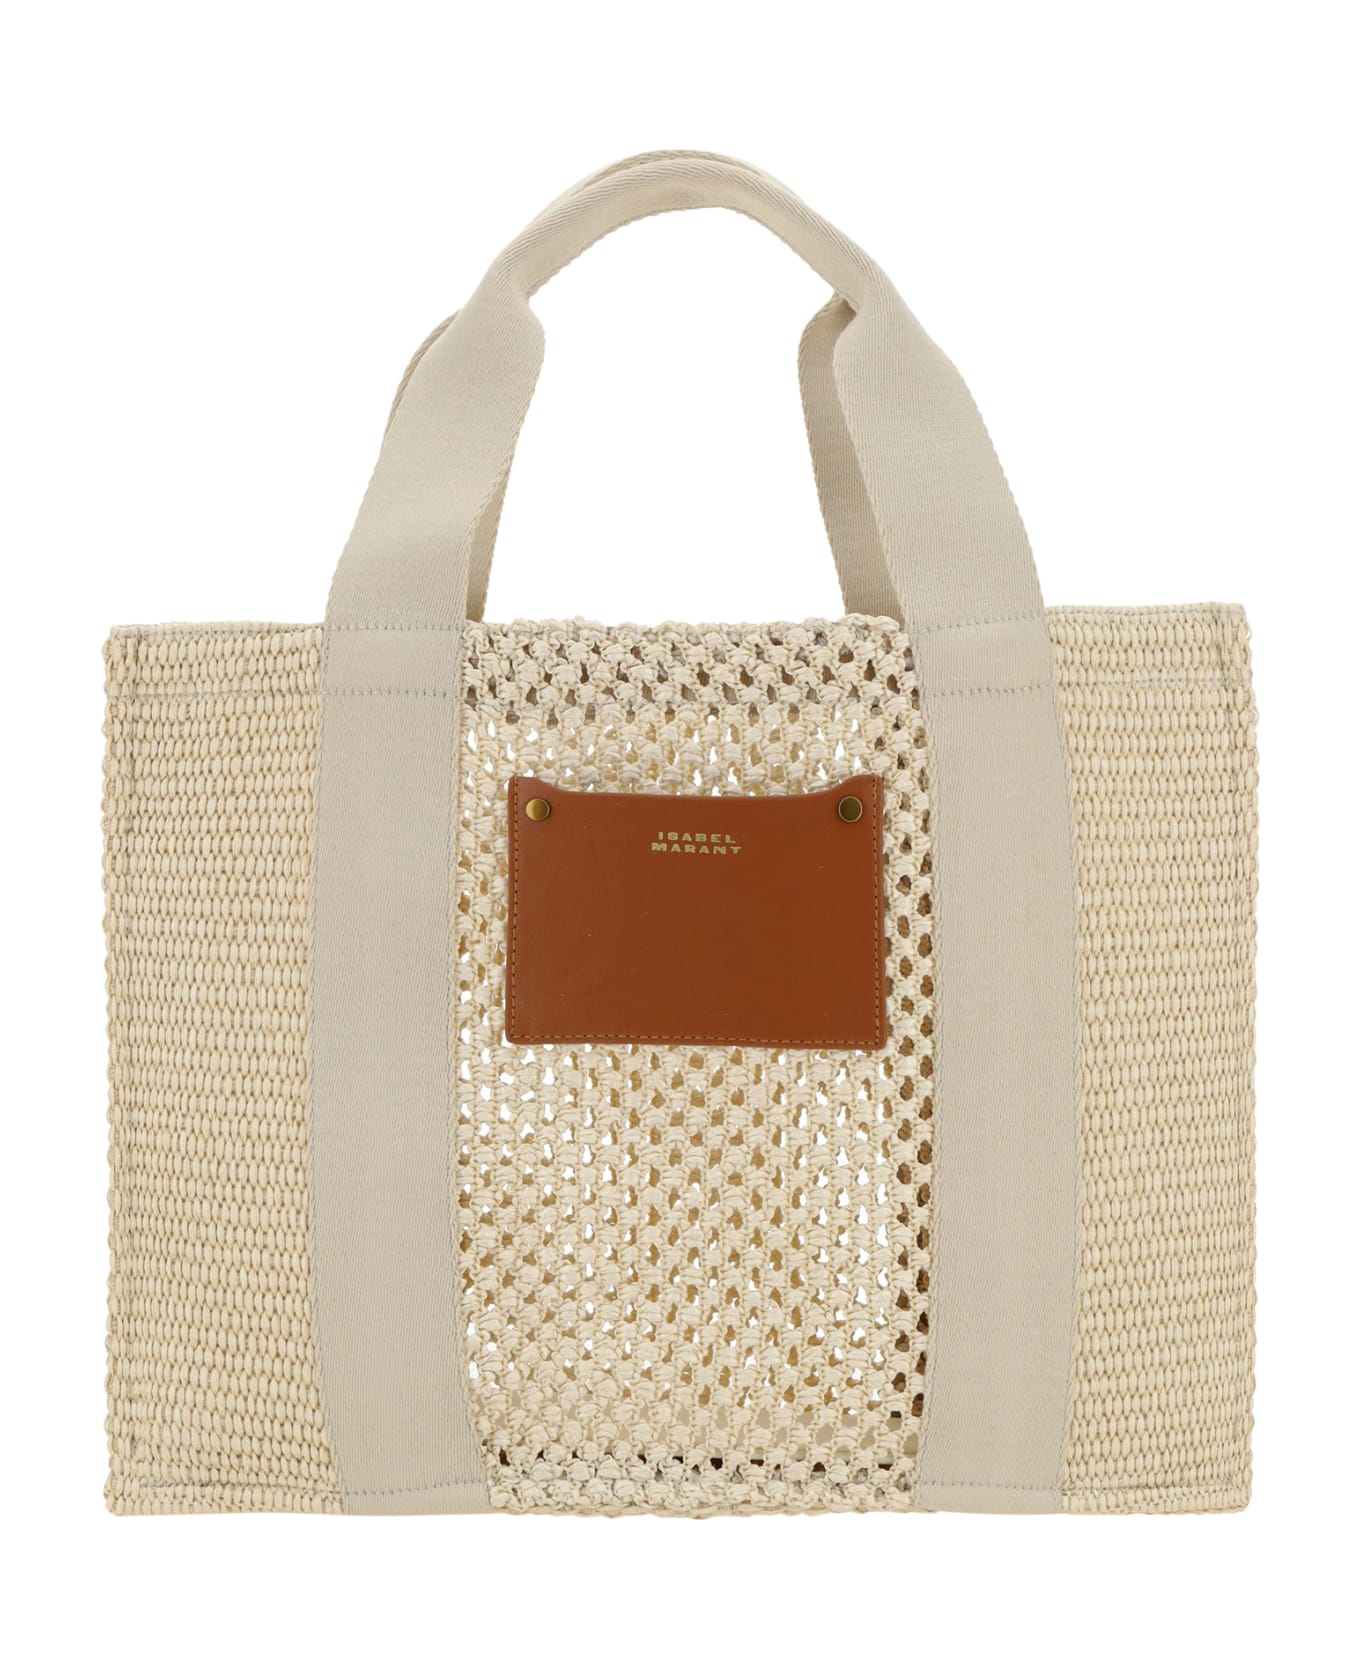 Isabel Marant Aruba Handbag - Beige/beige